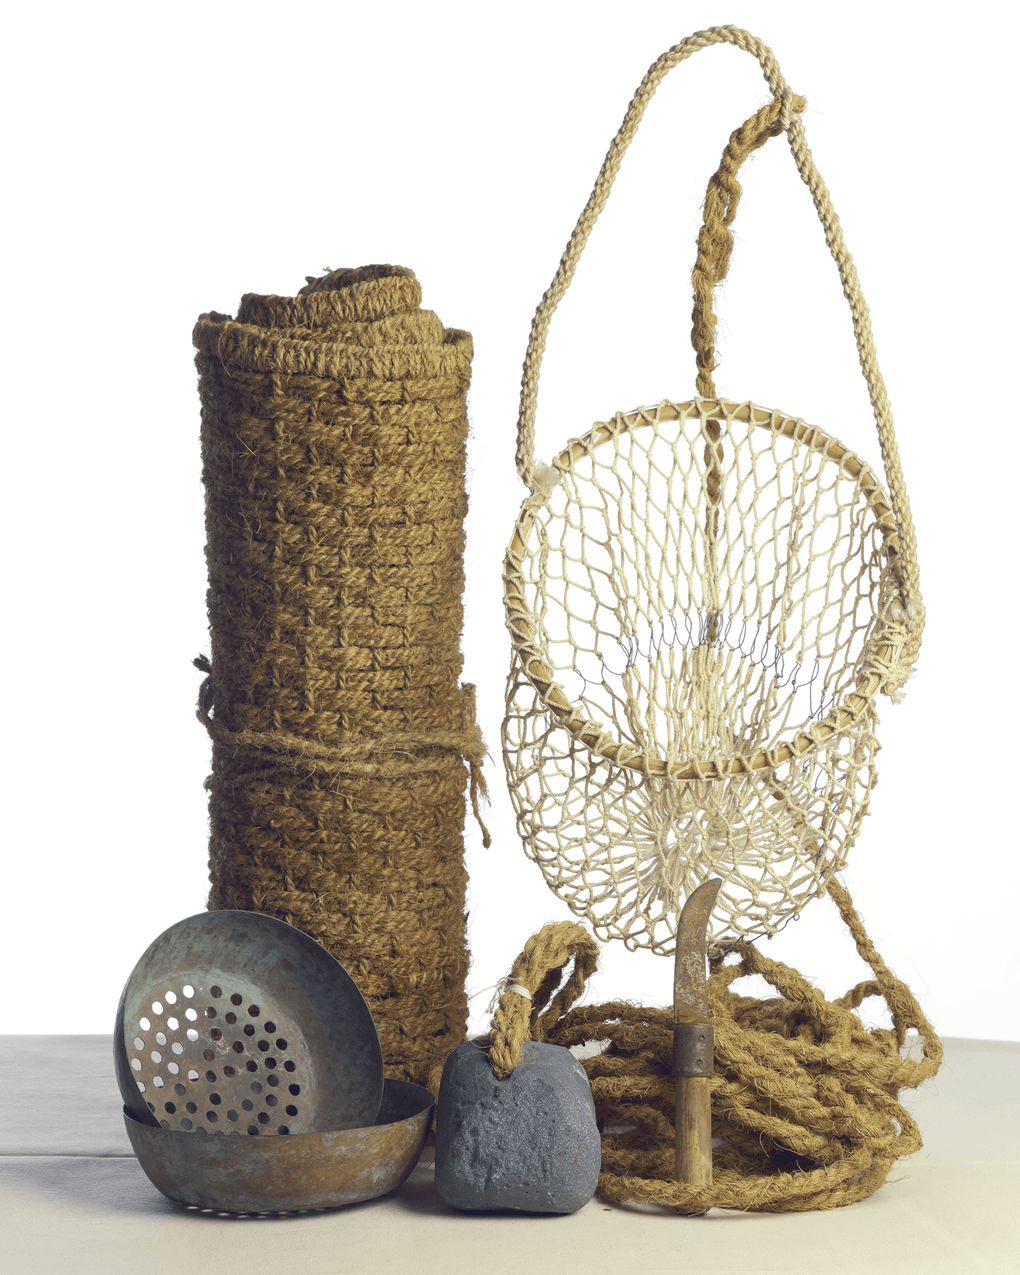 Плетеная корзина для сбора моллюсков и циновка ловца жемчуга. XX век. Фотография предоставлена Музеем шейха Фейсала, Катар